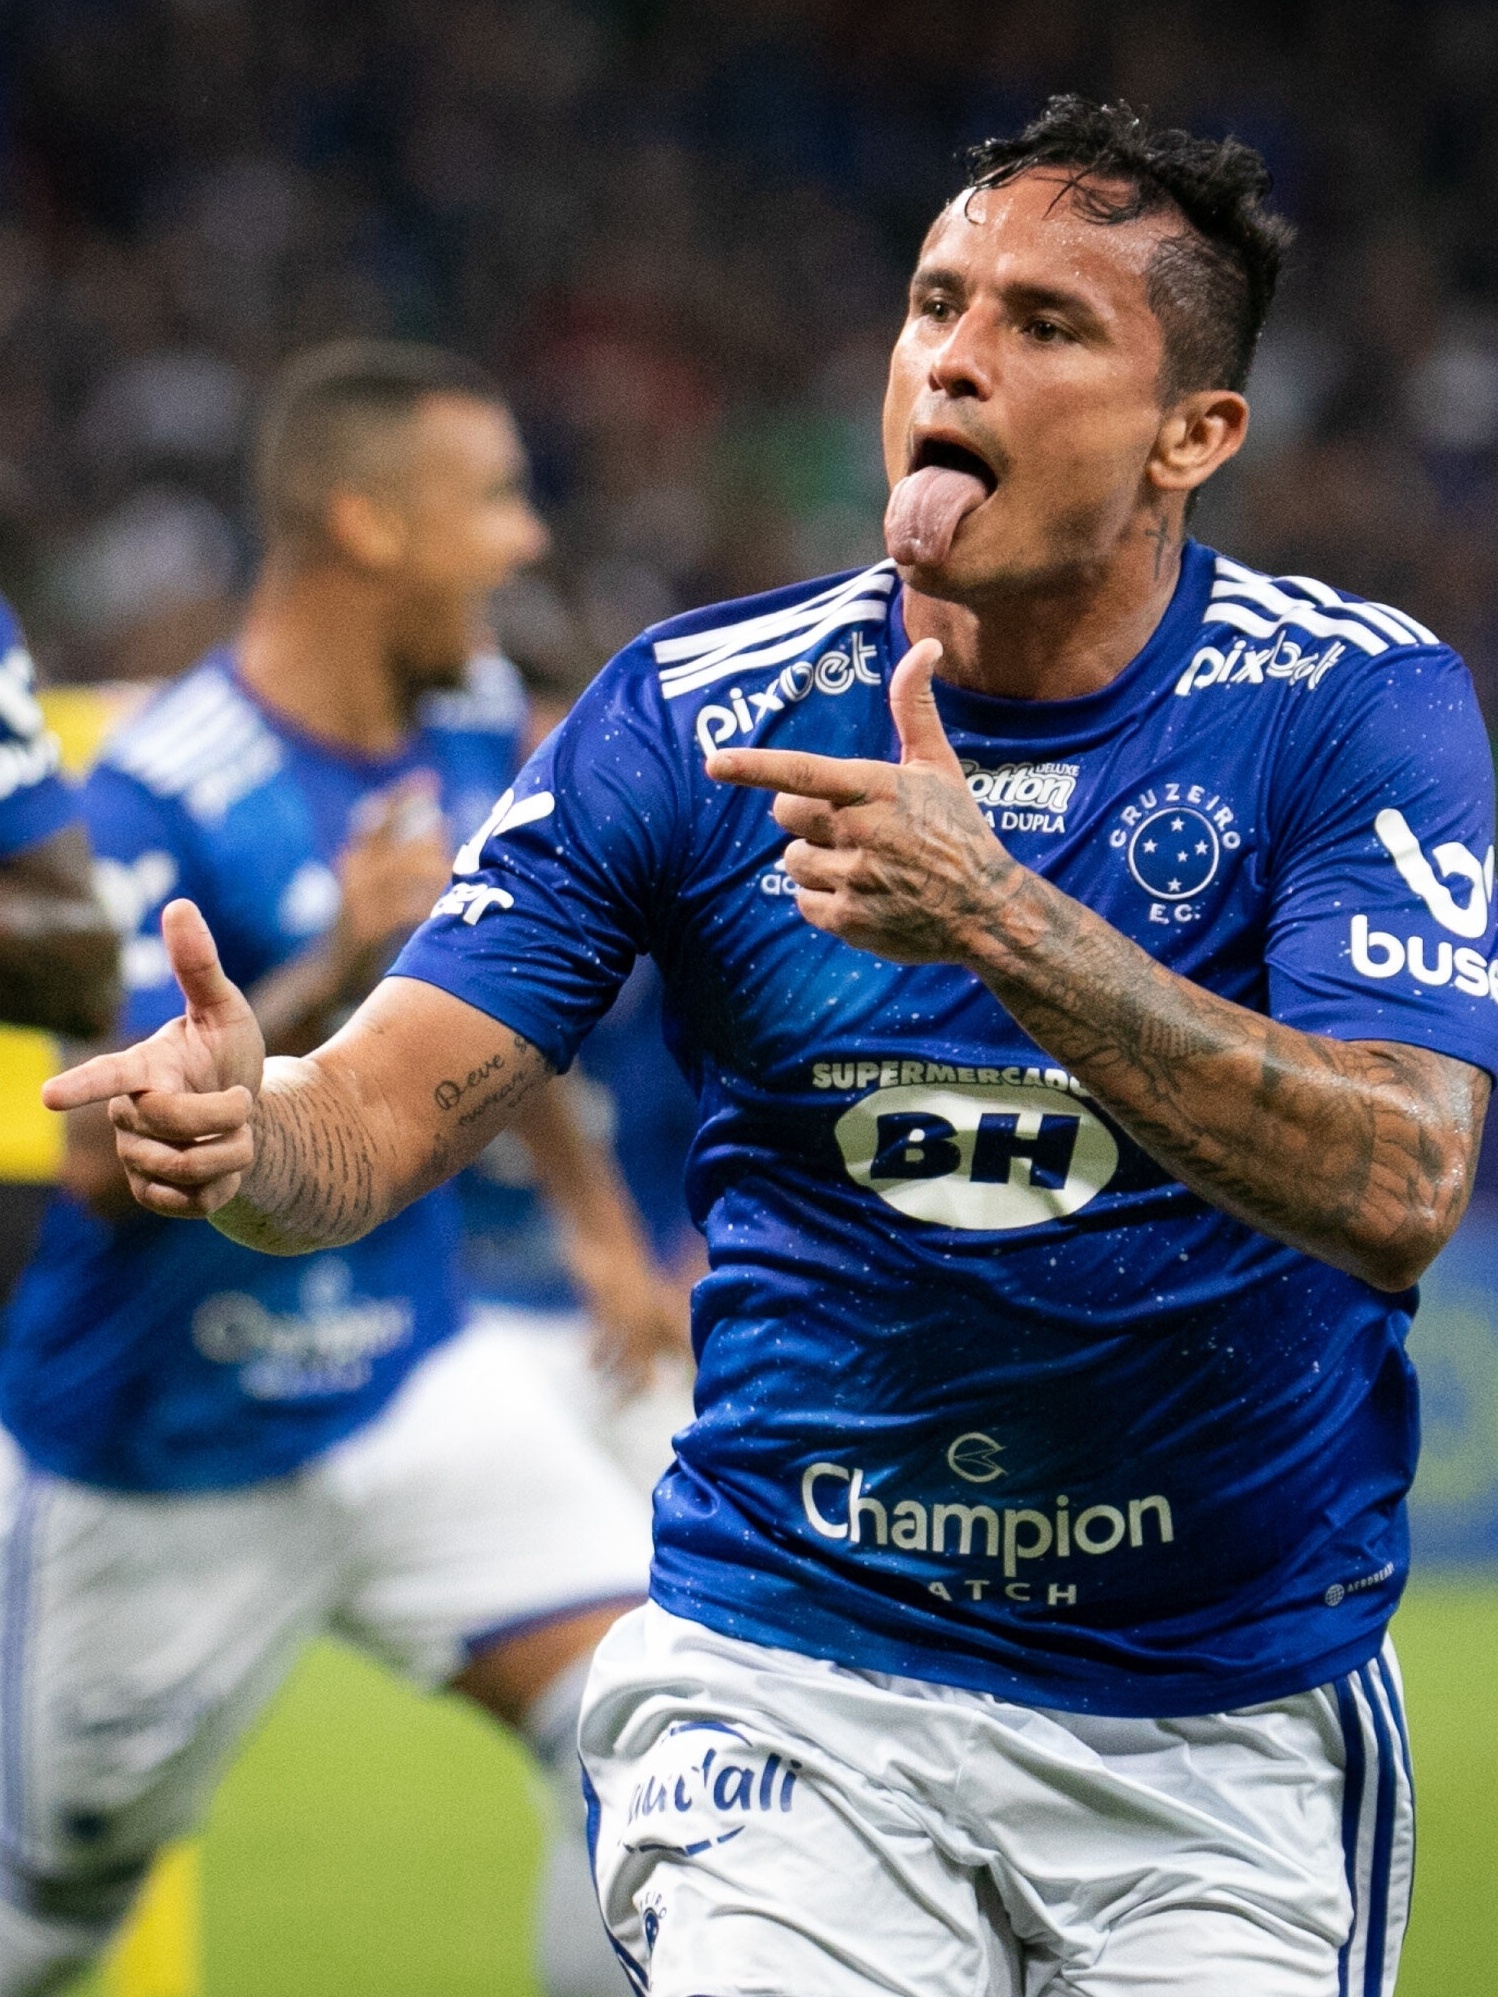 Cruzeiro, Últimas notícias, resultados e próximos jogos